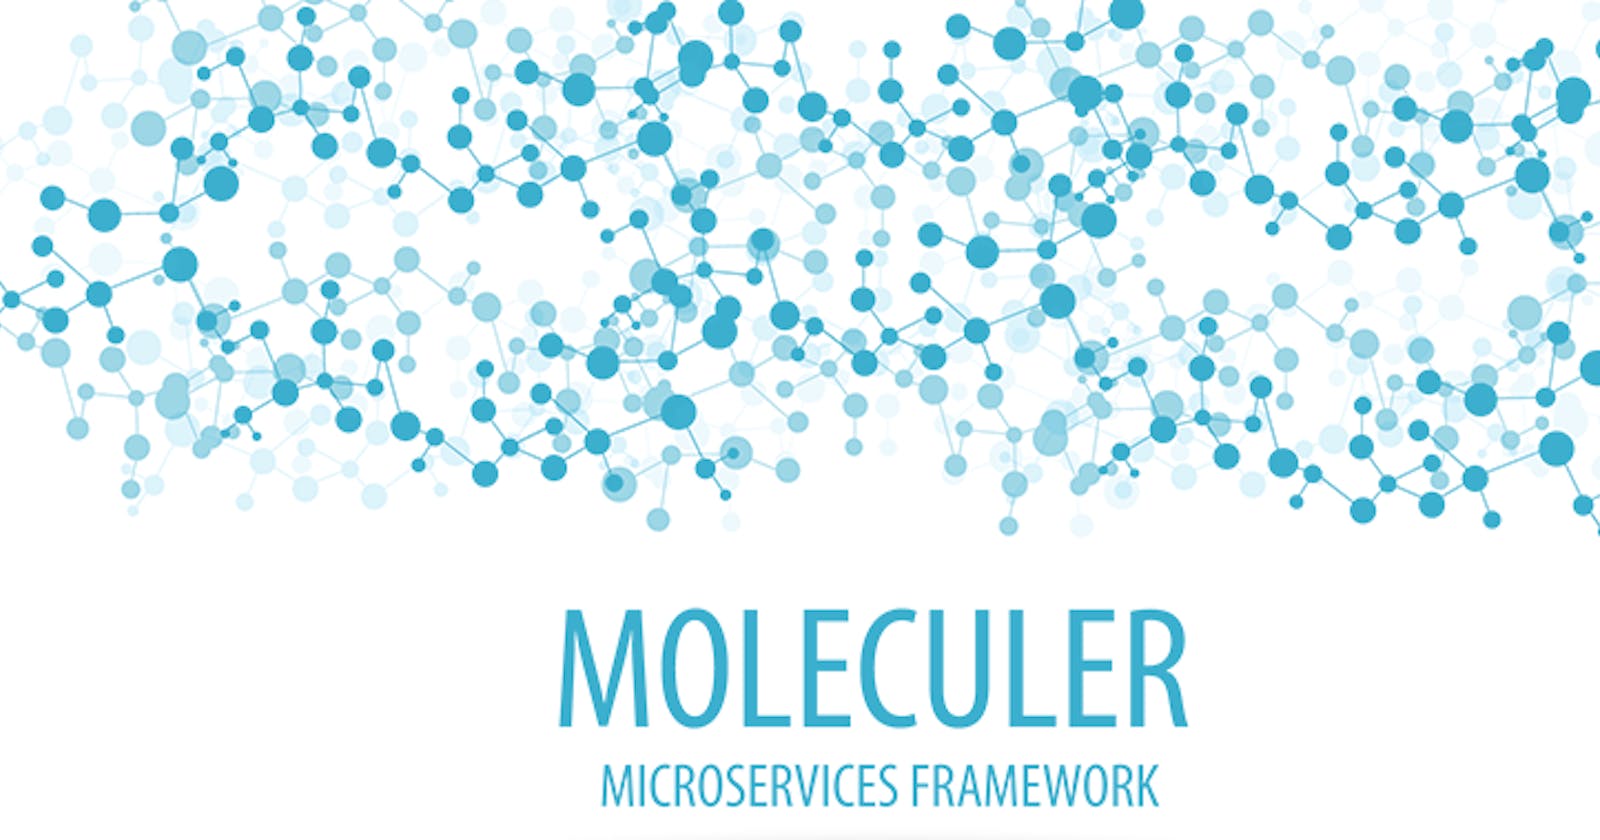 Moleculer, a modern microservices framework for NodeJS